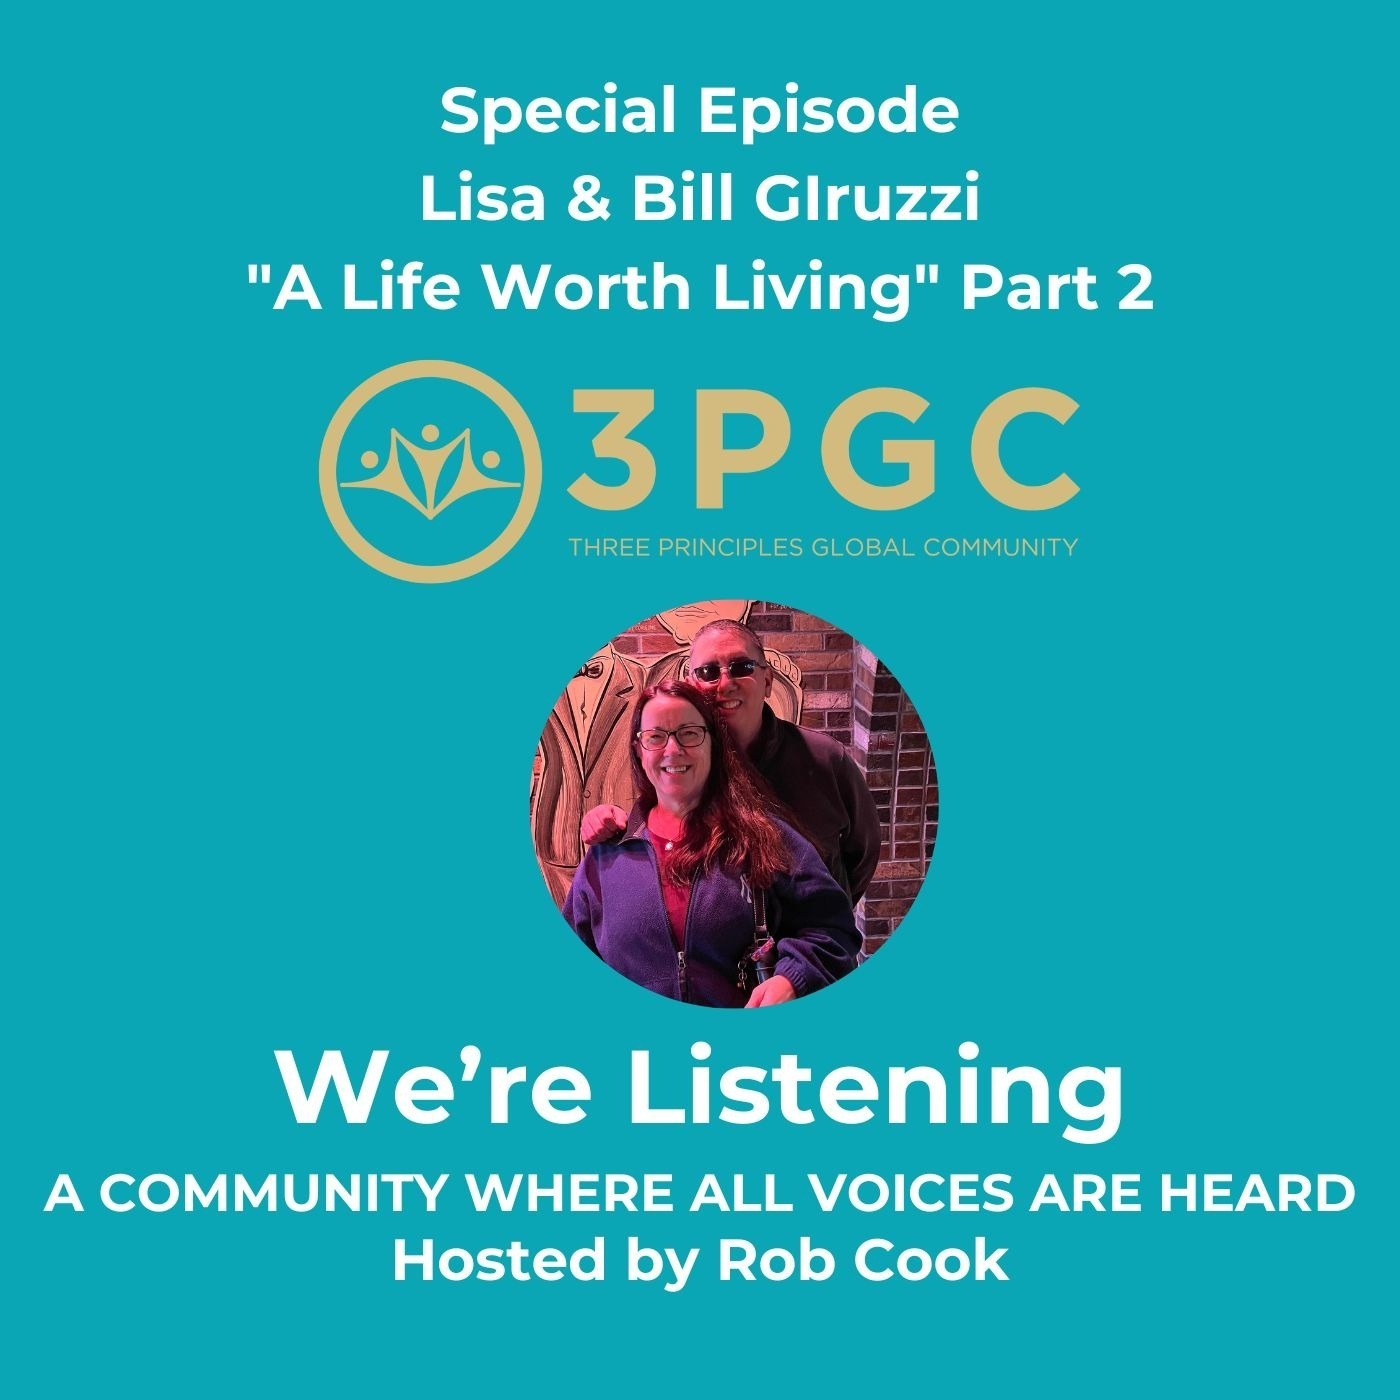 Special Episode Lisa & Bill Giruzzi "A Life Worth Living" Part 2